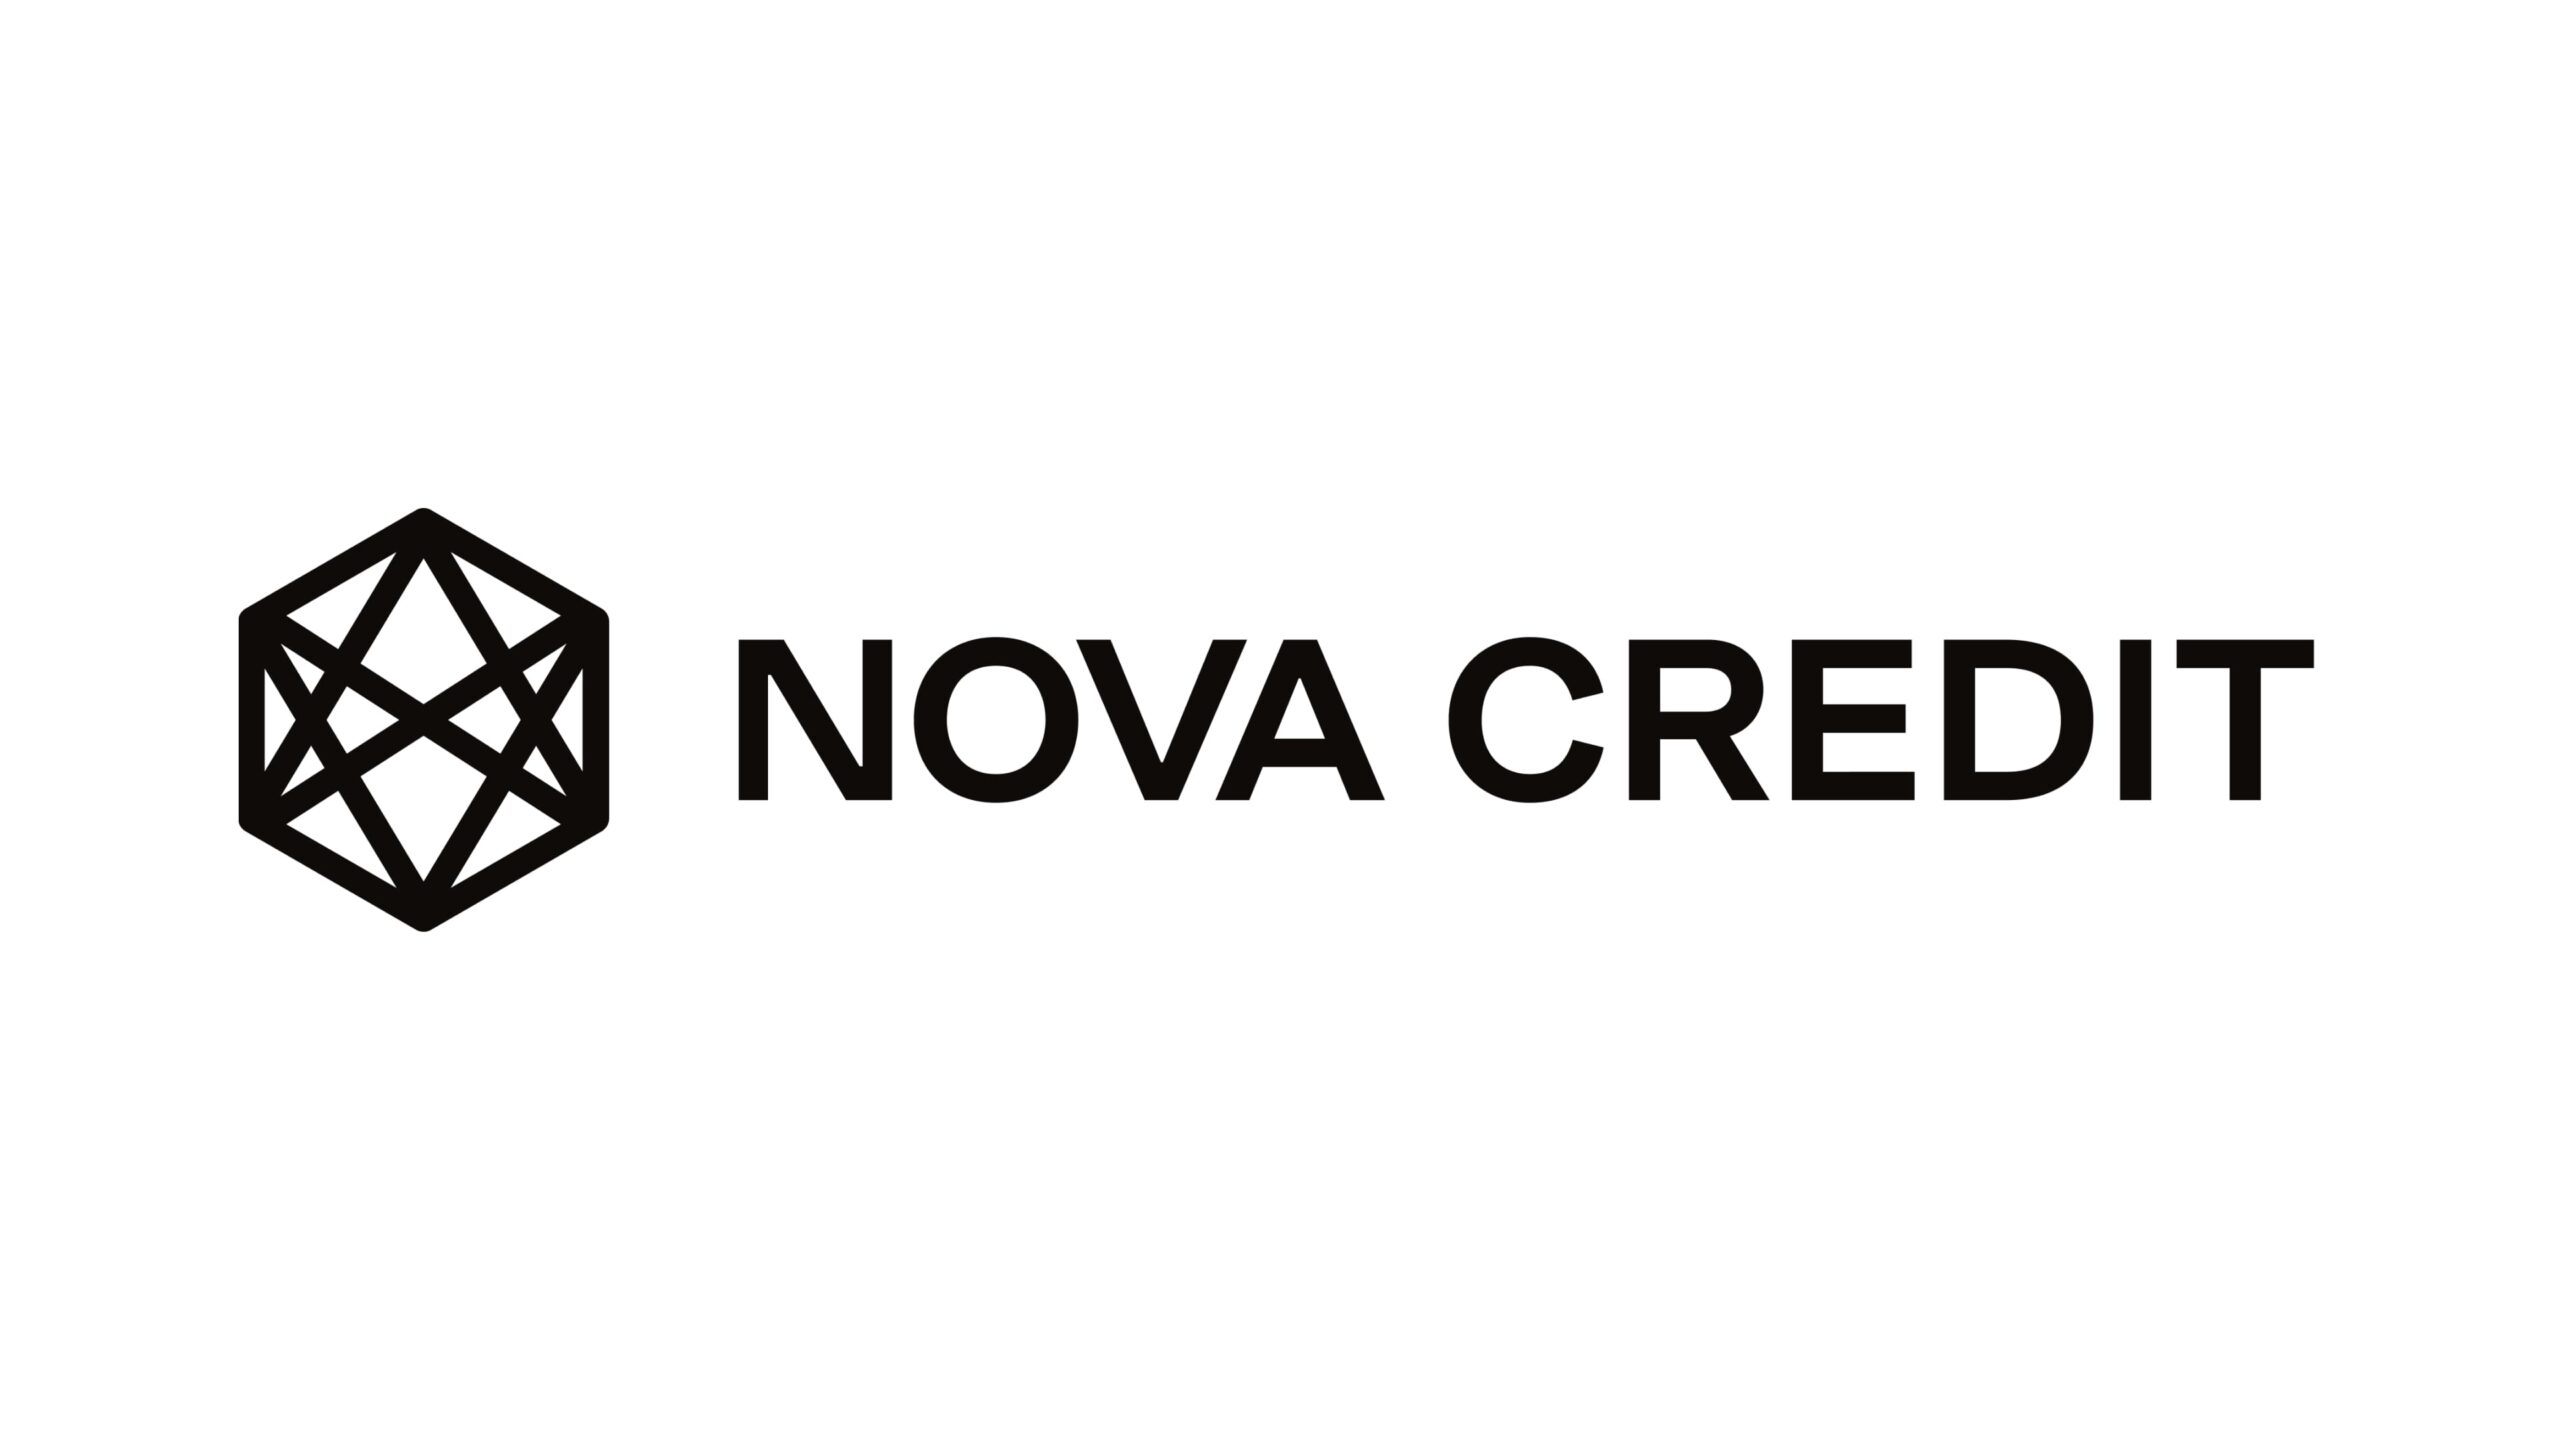 Nova Credit、クロスボーダーおよびオルタナティブ・データ・クレジット商品の拡大に4500万ドルを獲得